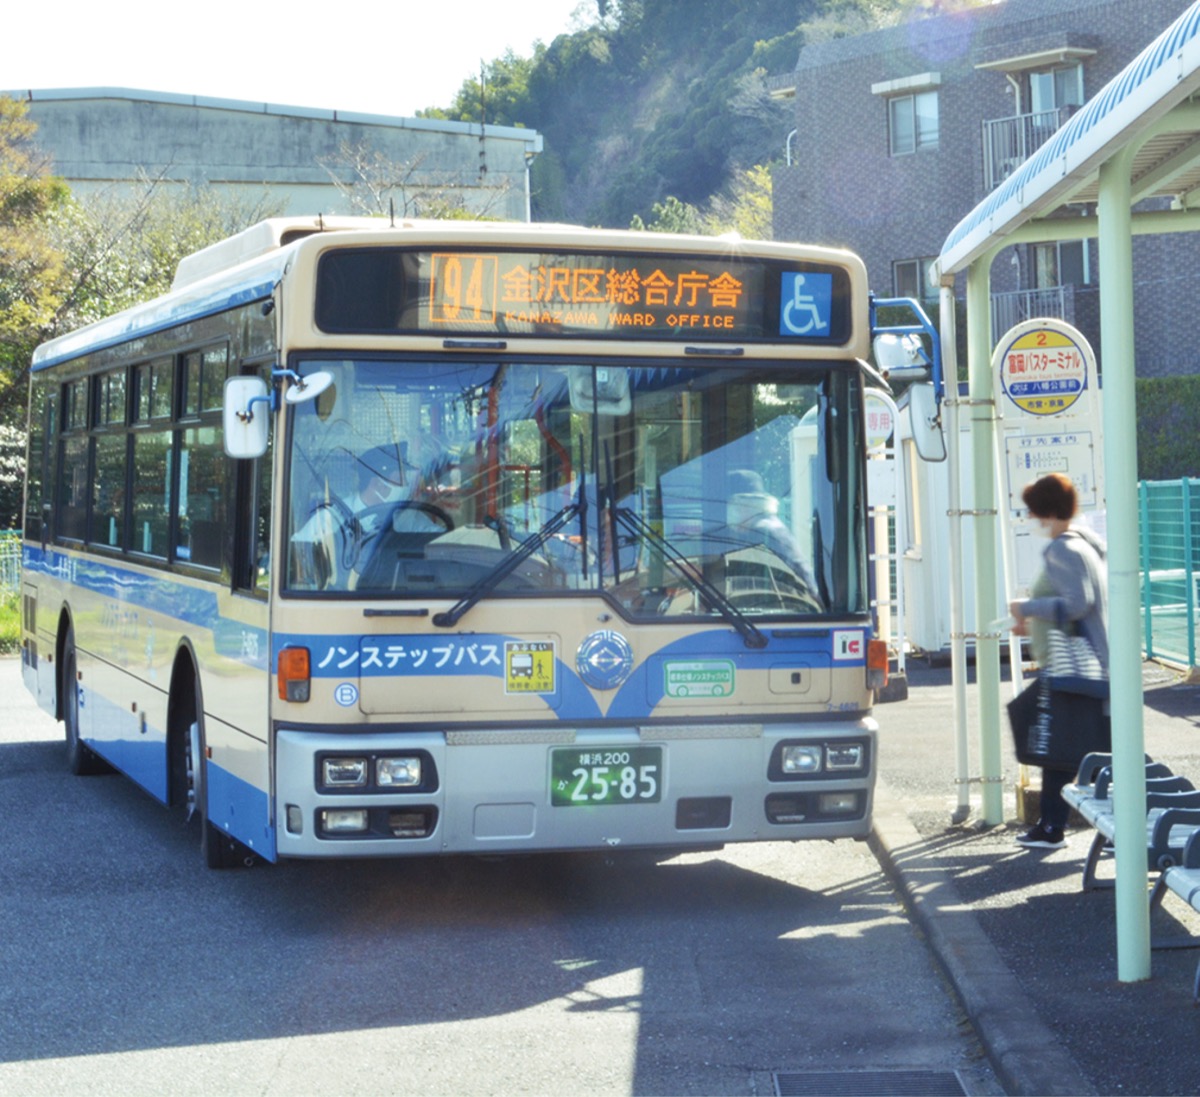 横浜市金沢区 富岡 区役所間 94系統バス が運行終了 新路線で利便性確保へ 神奈川 東京多摩のご近所情報 レアリア